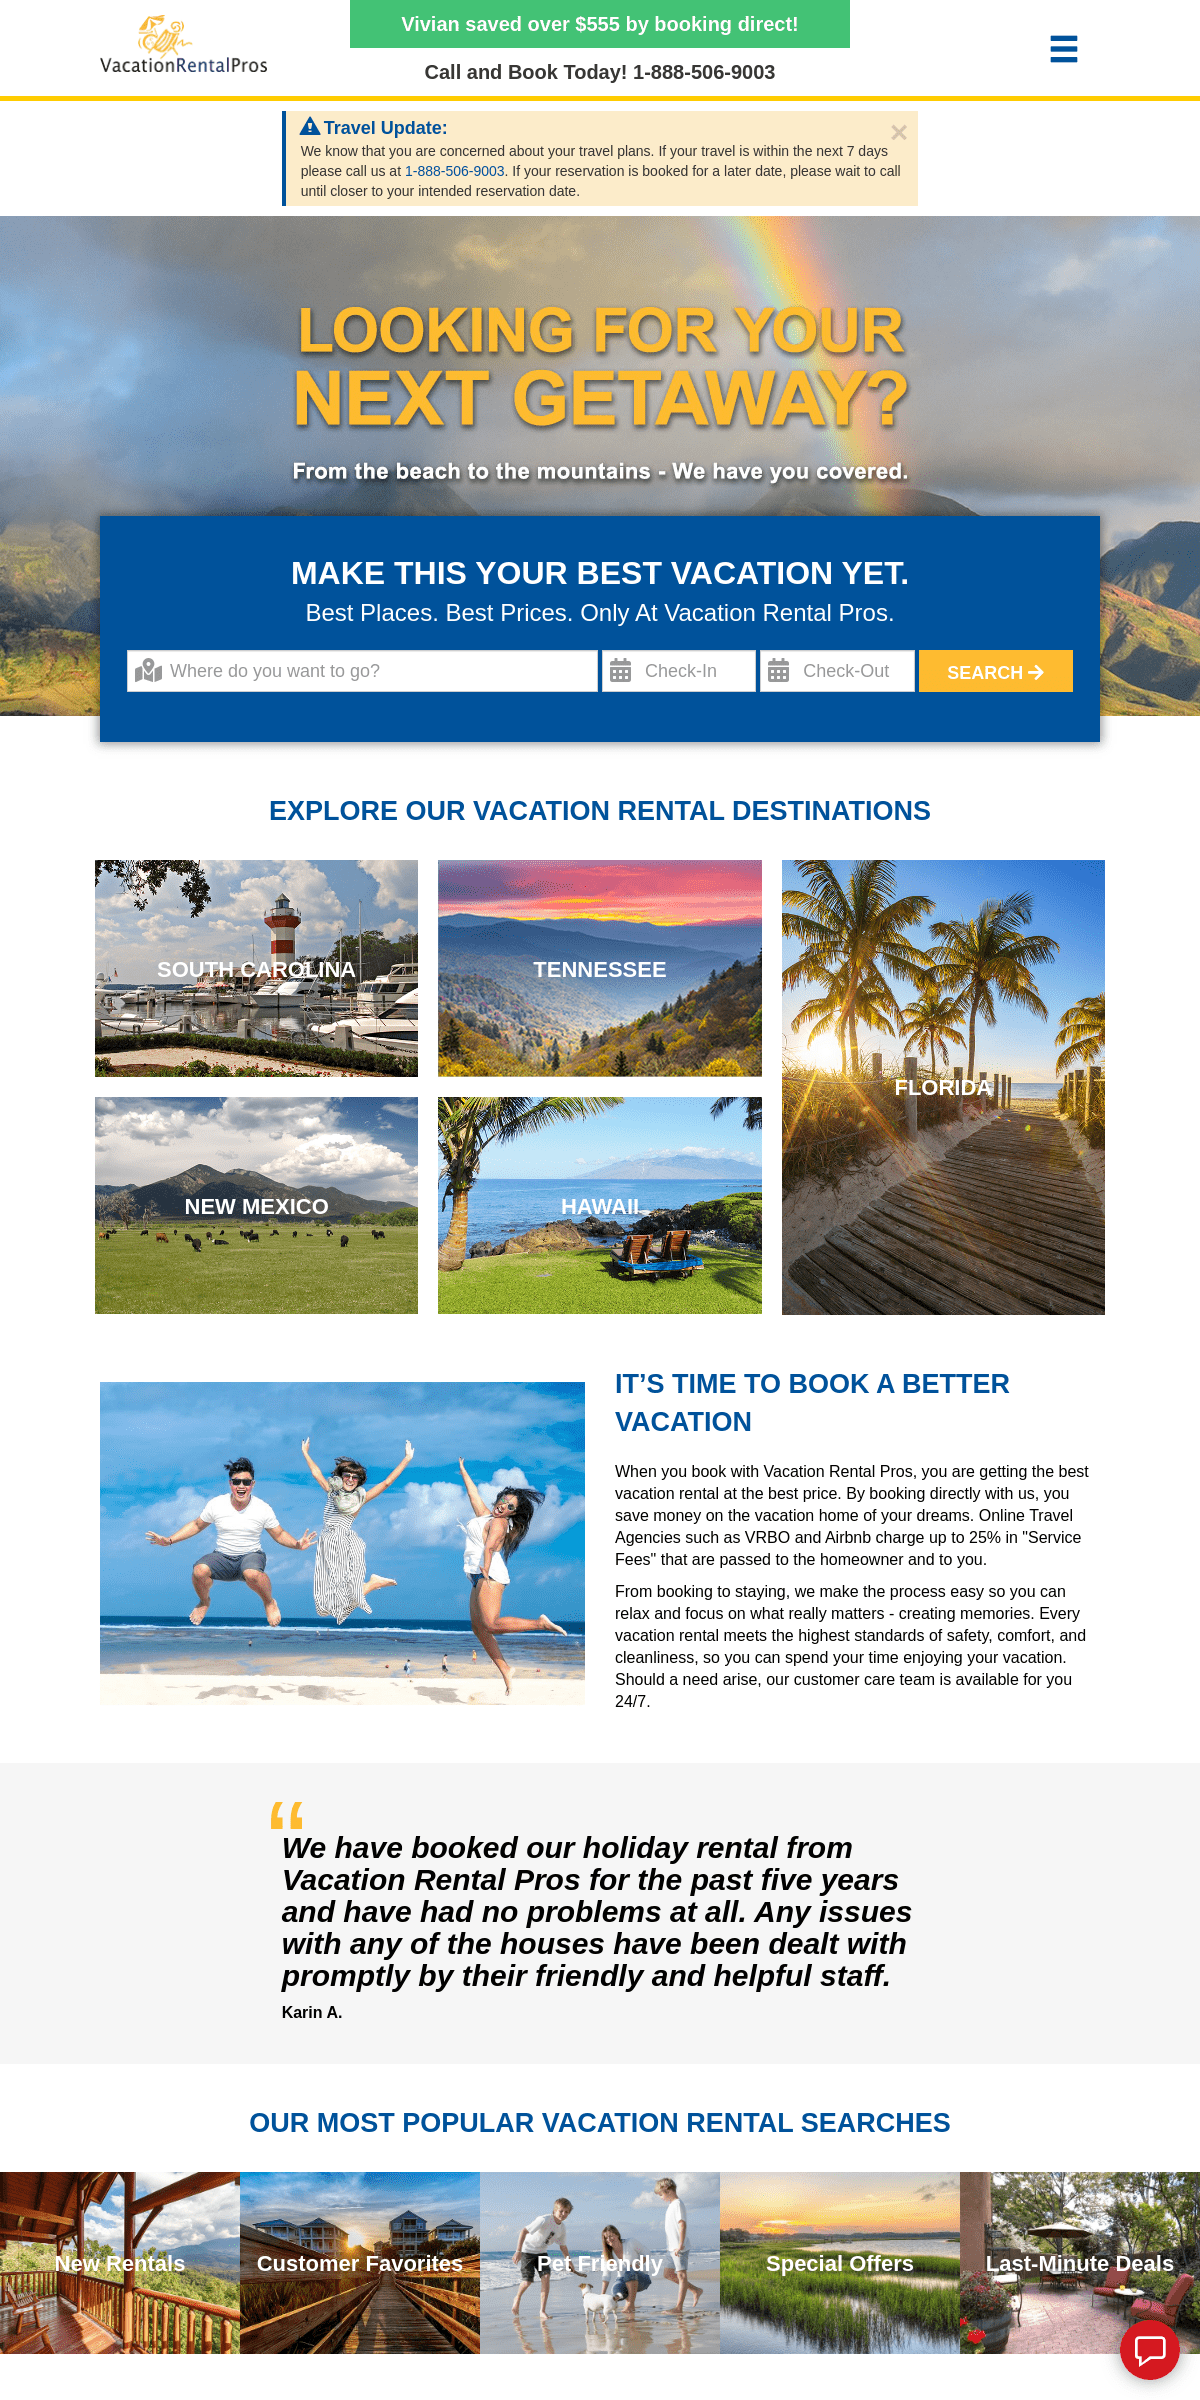 A complete backup of vacationrentalpros.com